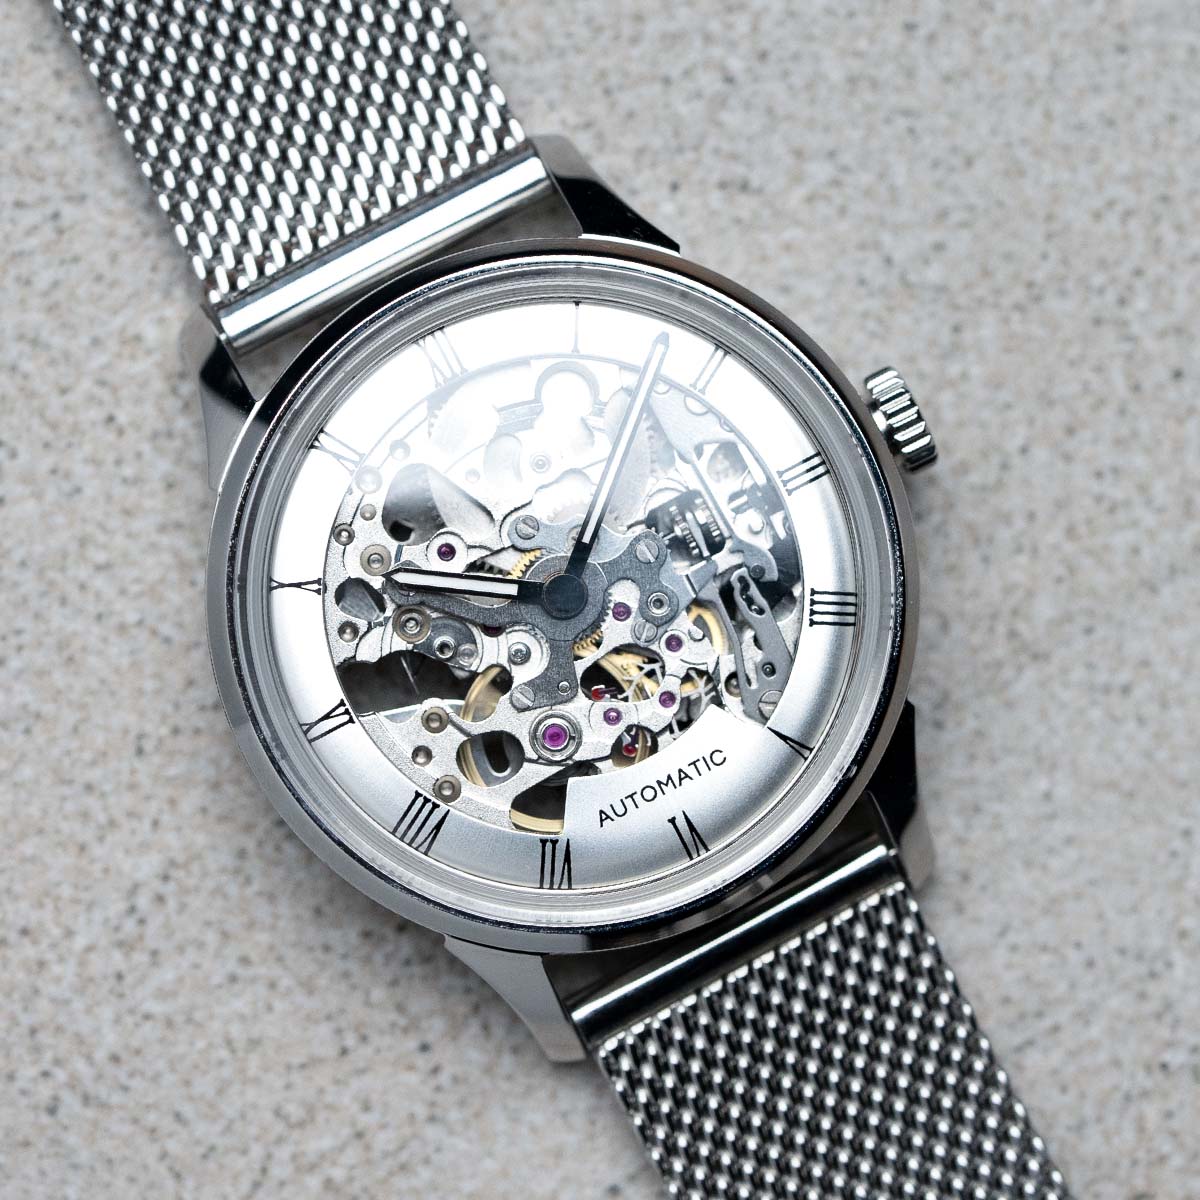 DIY Watchmaking Kit | 35mm Mosel series - Silver Dial Skeleton dress watch w/ Miyota 8N24 